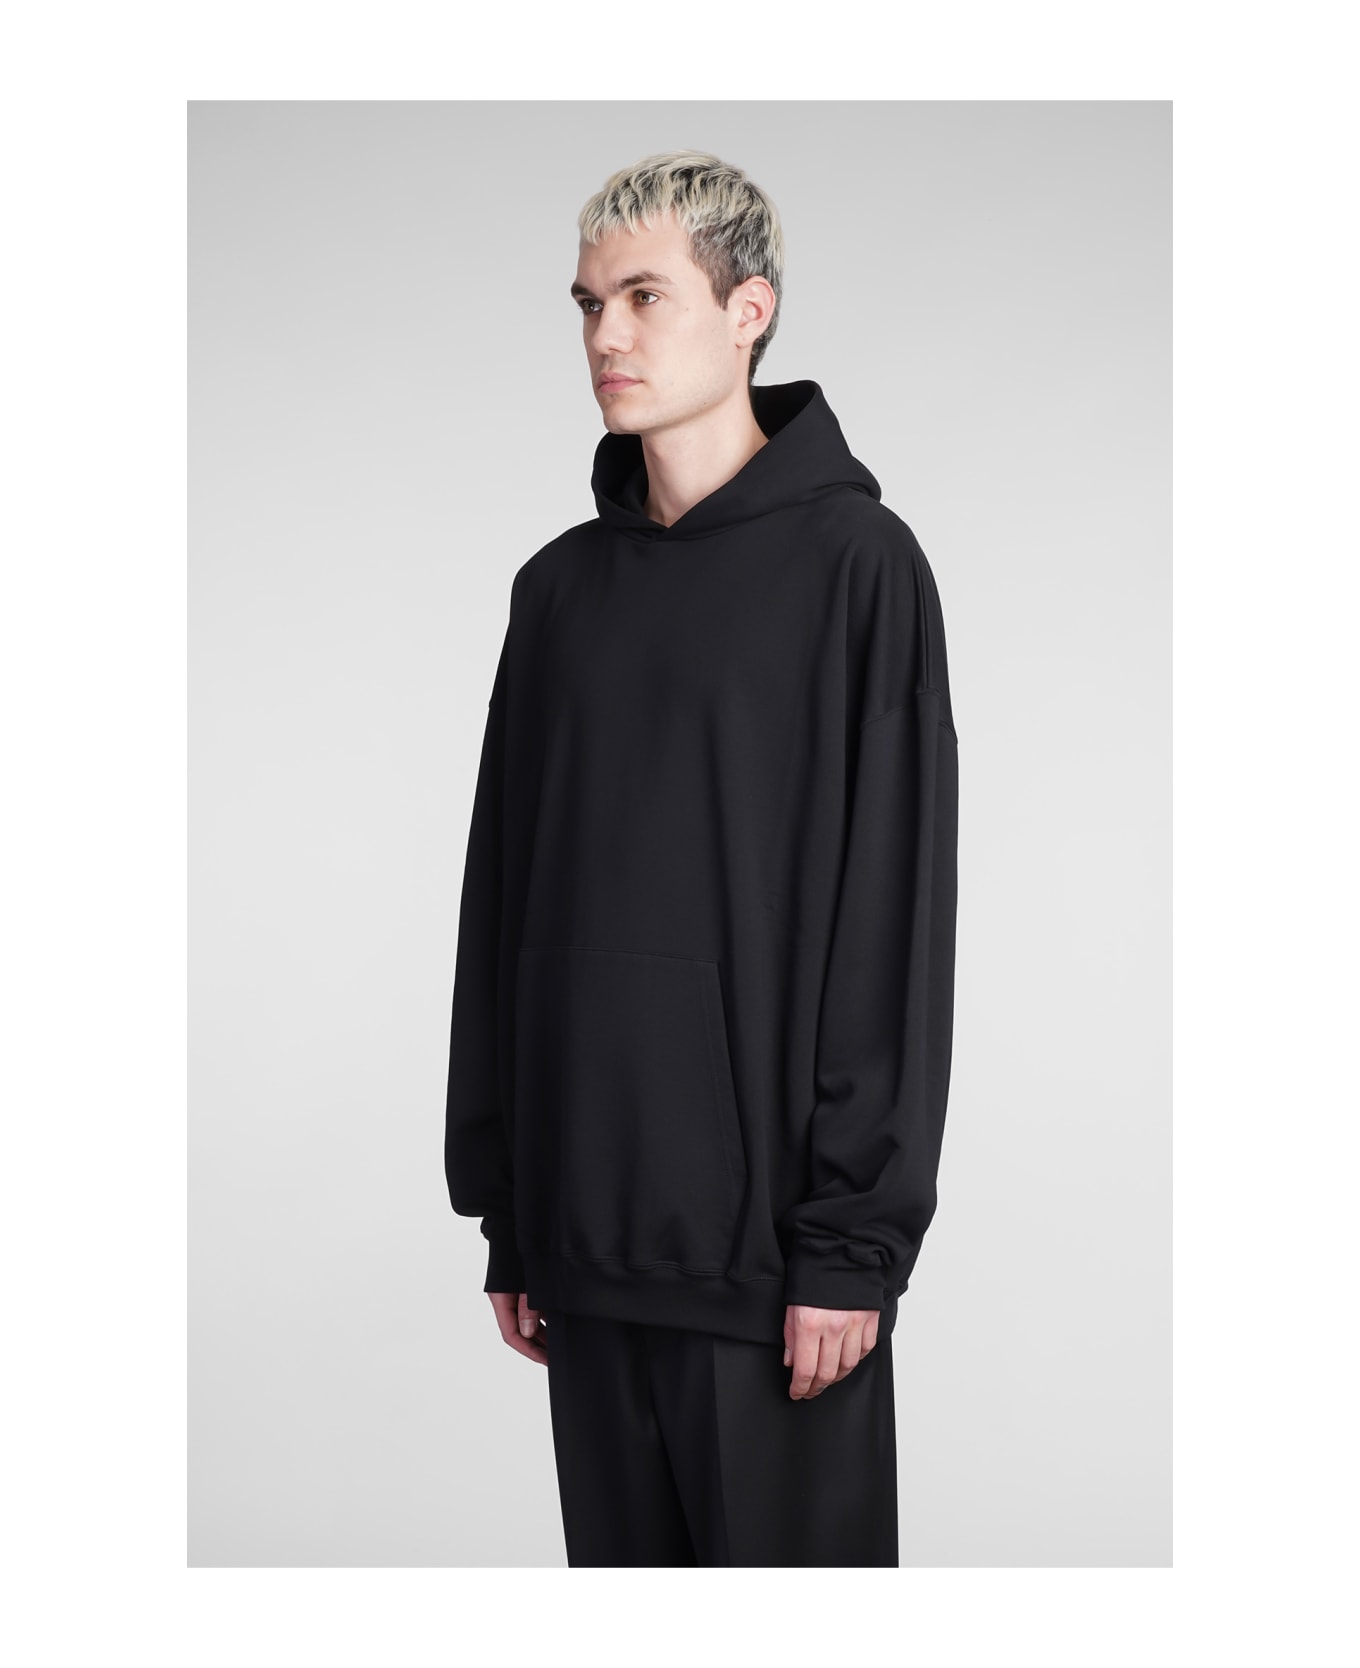 Balenciaga Sweatshirt In Black Cotton - black